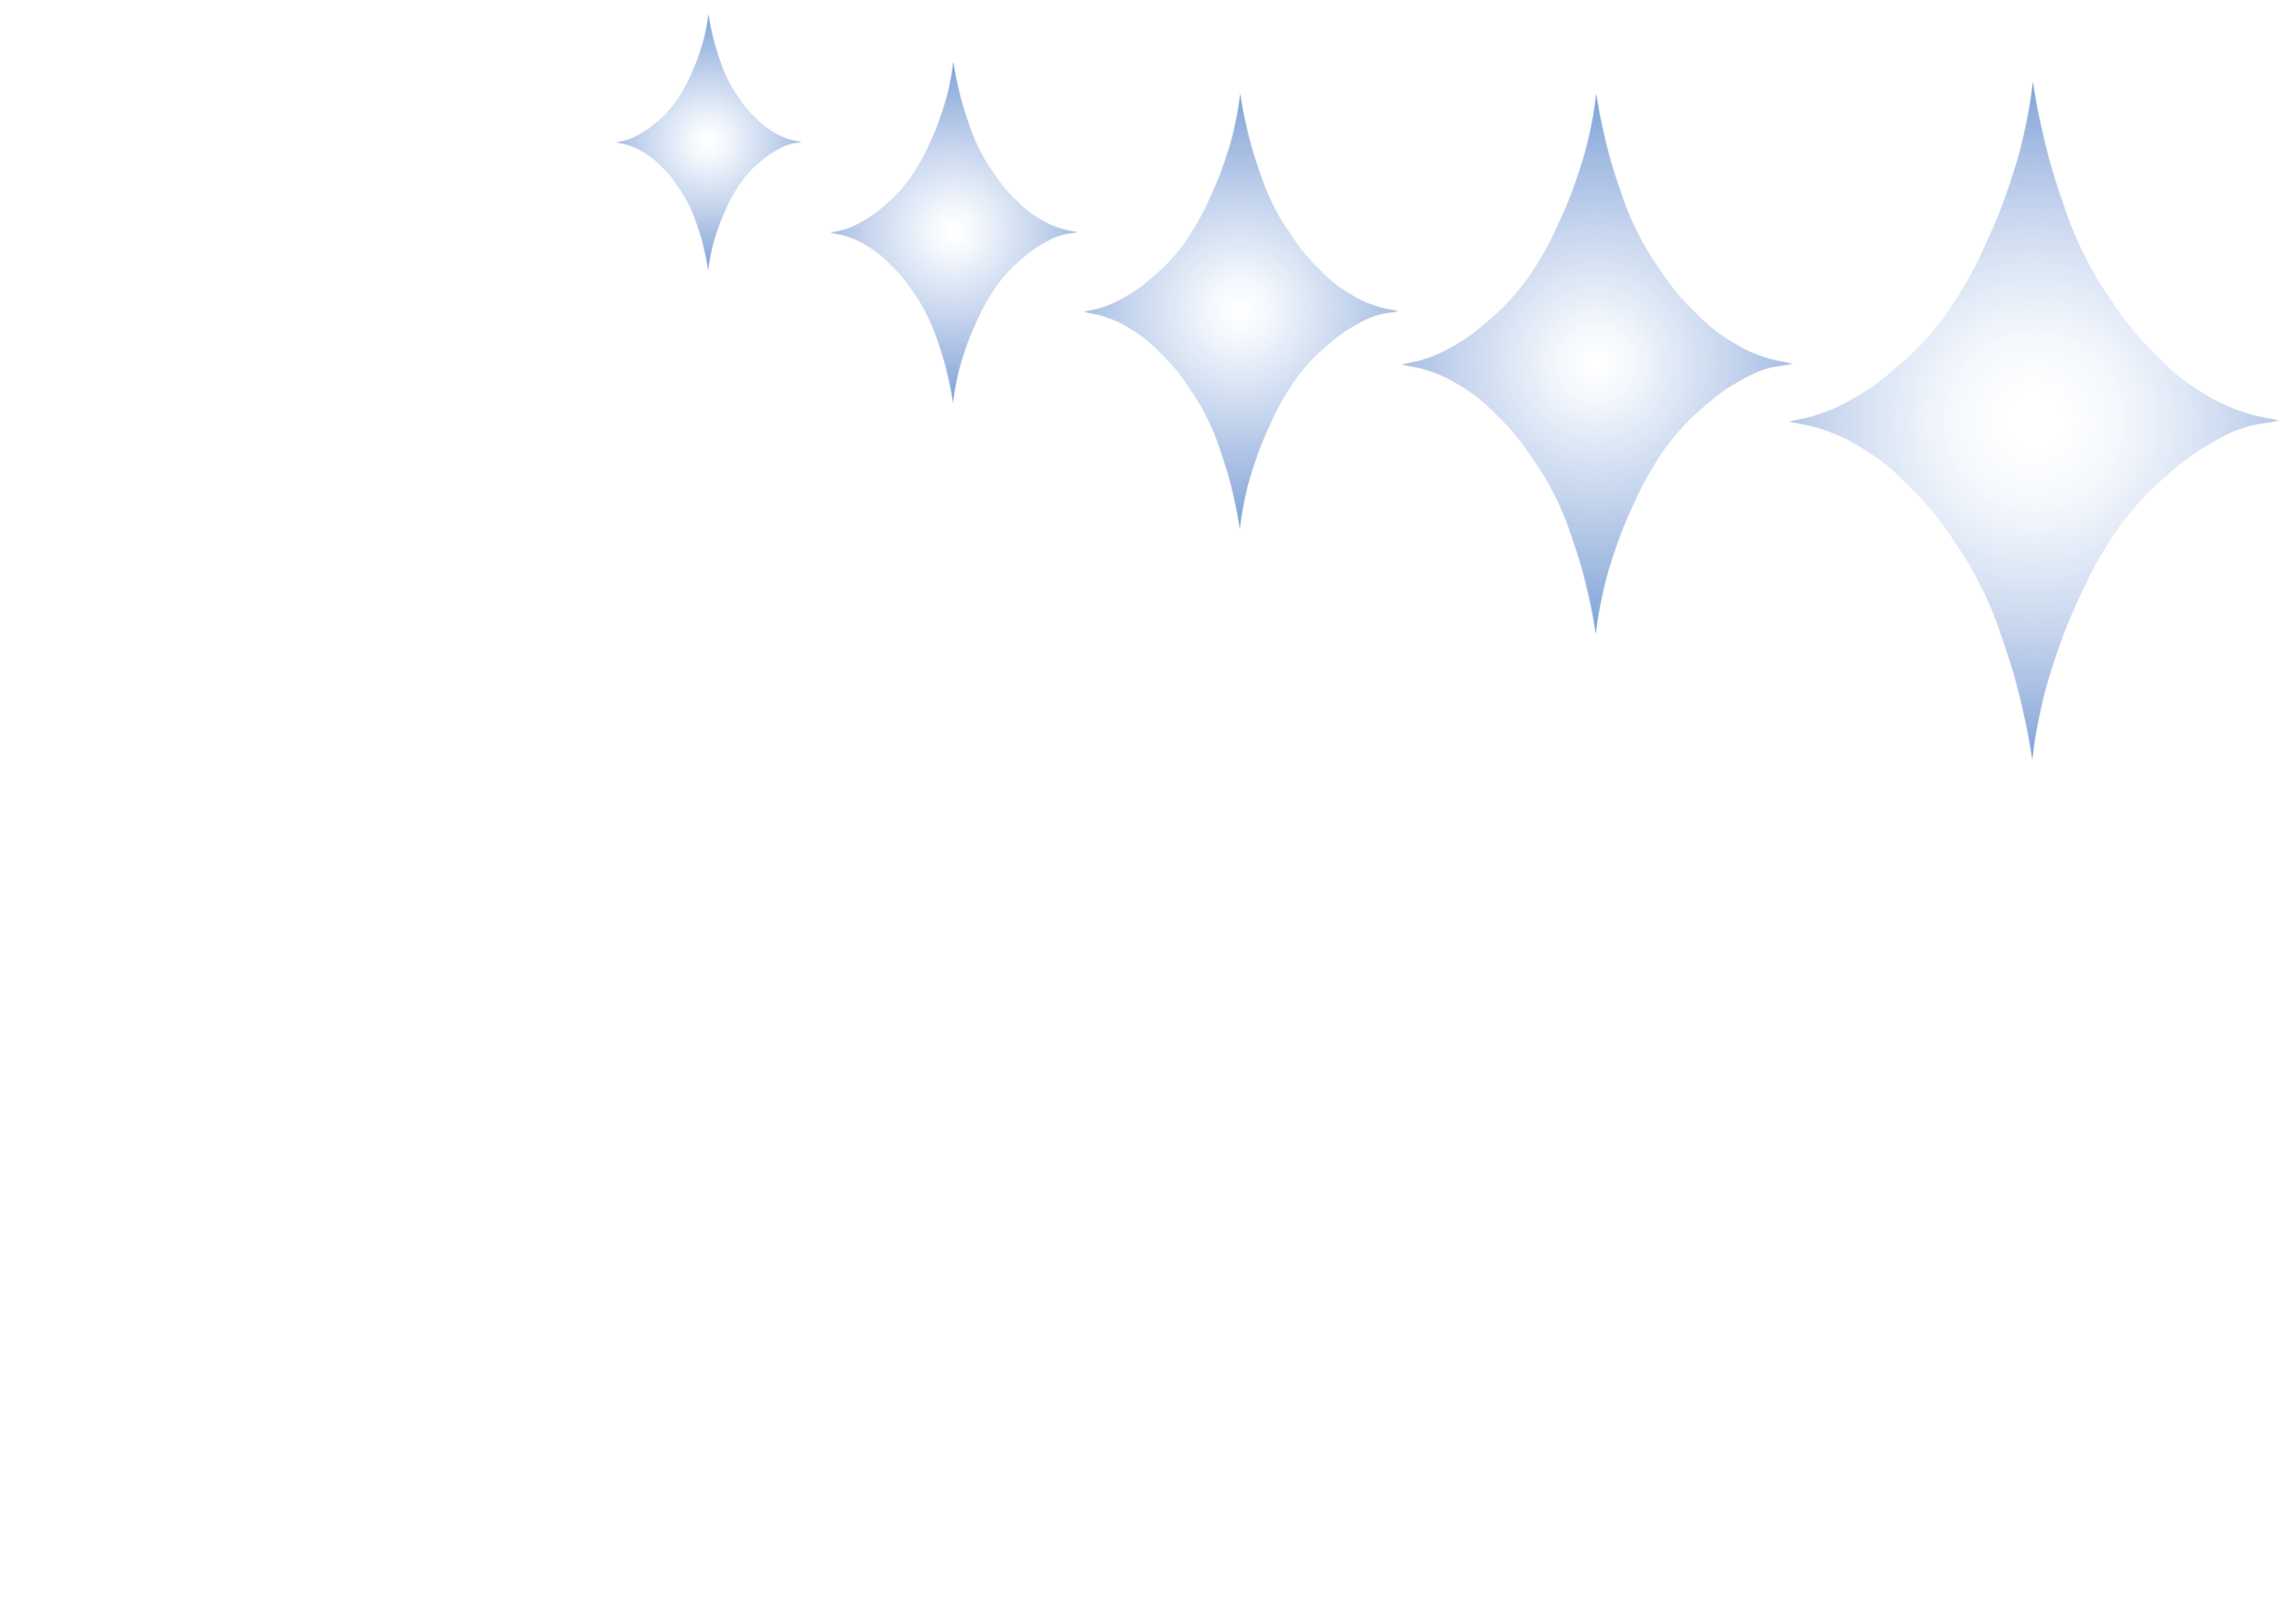 Nelson Orthodontics